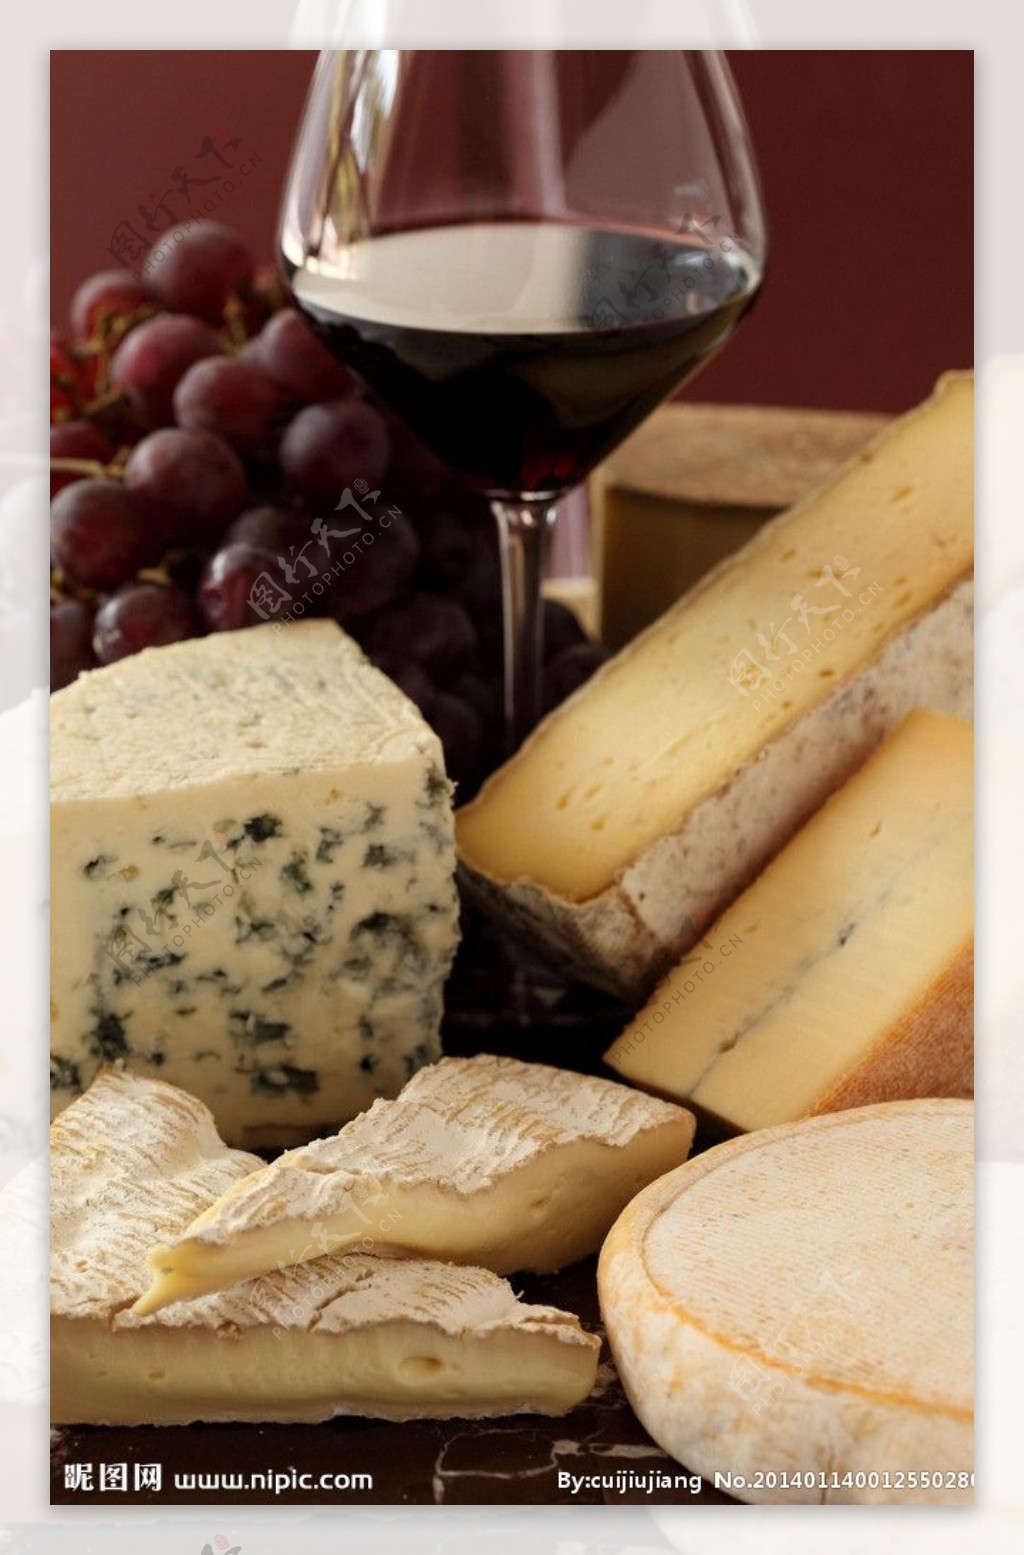 浓缩就是精华，精华就是奶酪，奶酪就是芝士，芝士就是力量！_哔哩哔哩 (゜-゜)つロ 干杯~-bilibili